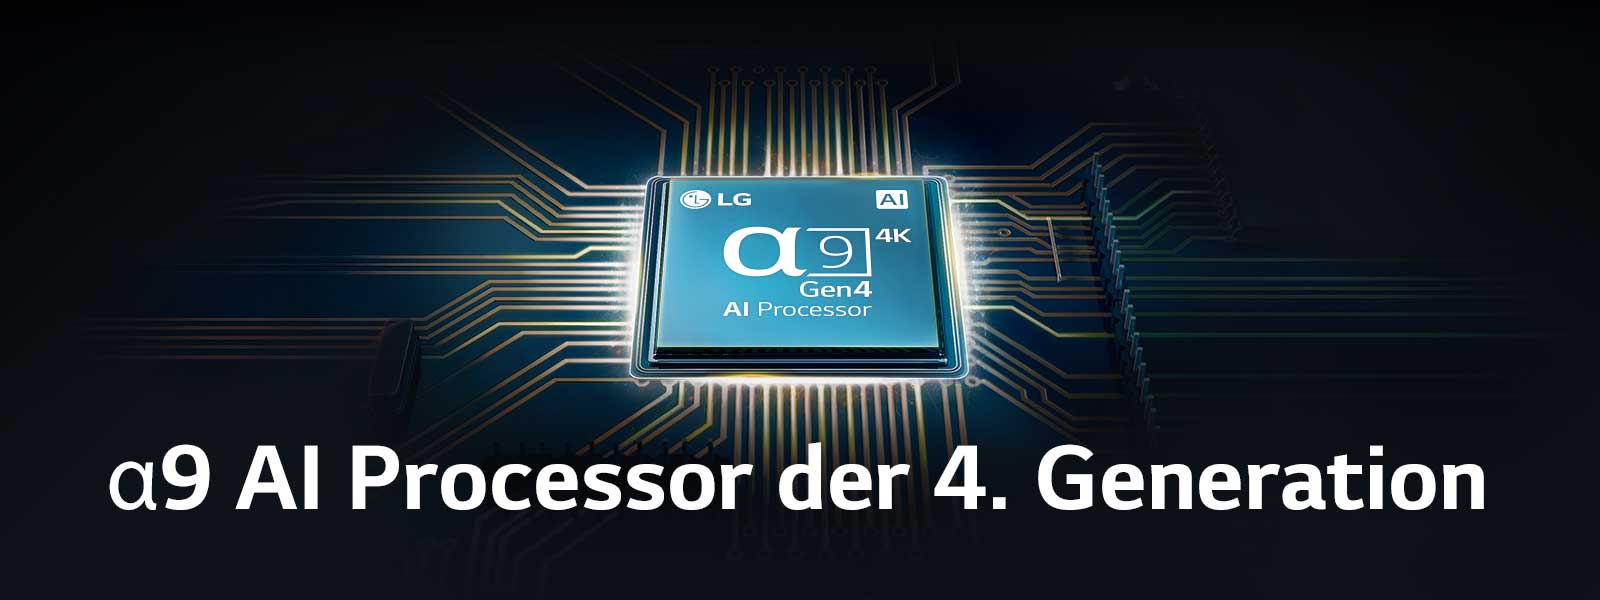 In der Mitte der elektrischen Schaltung befindet sich ein α9 AI Processor der 4. Generation.